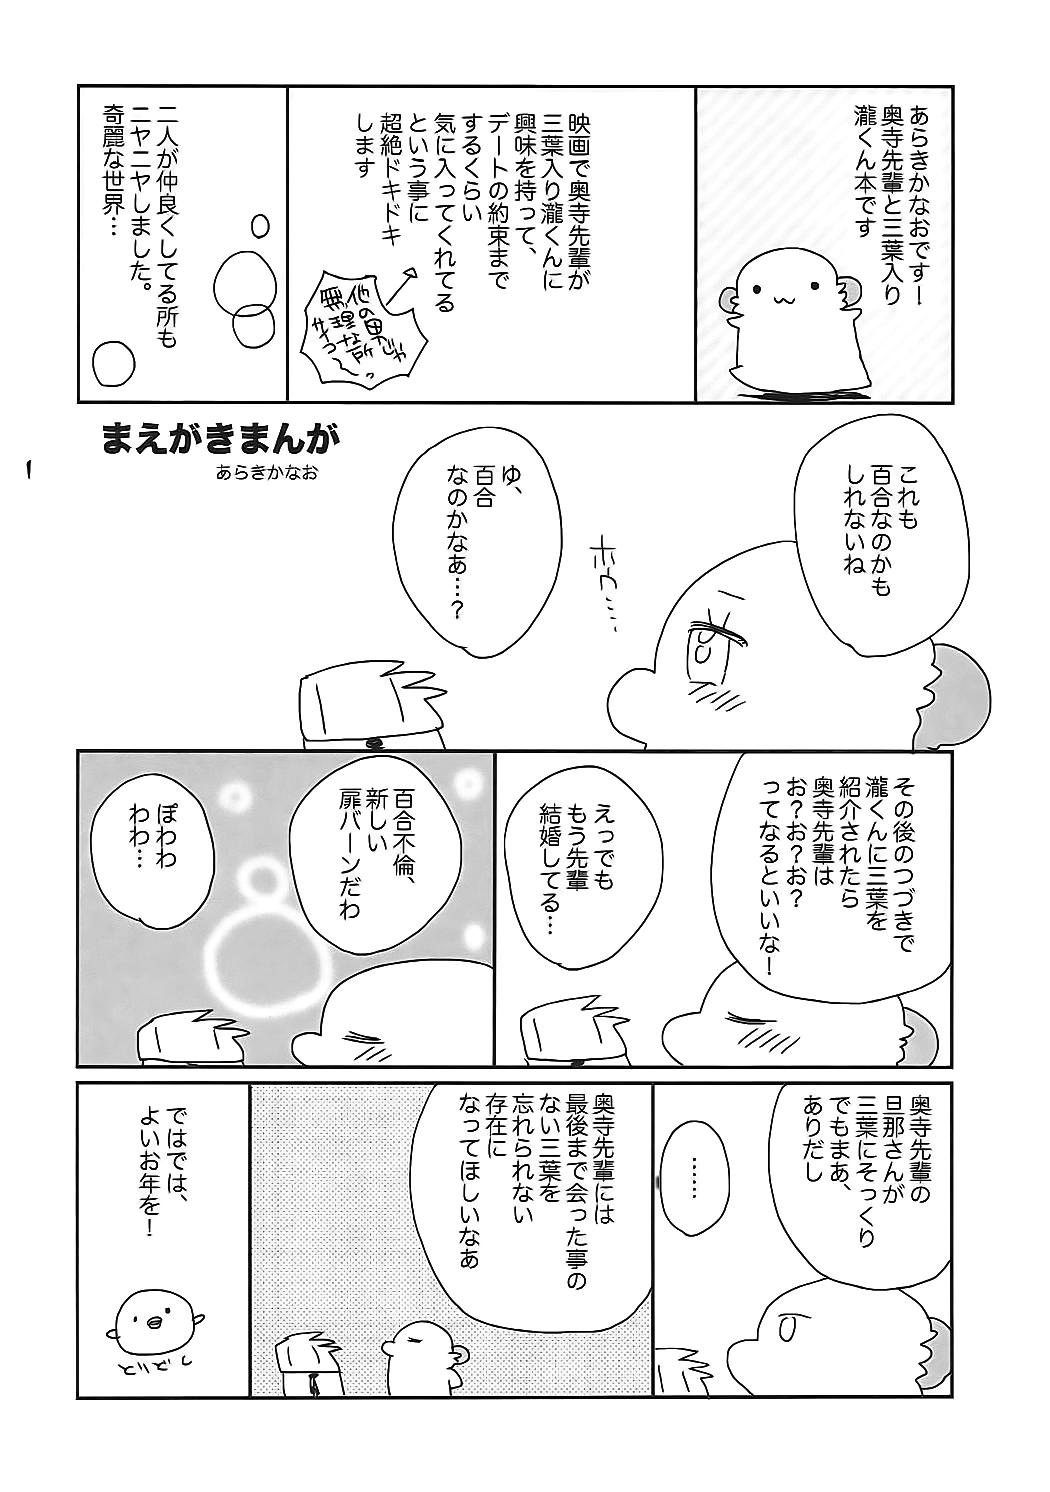 Home Okudera-senpai wa Shiranai - Kimi no na wa. Gym - Page 3